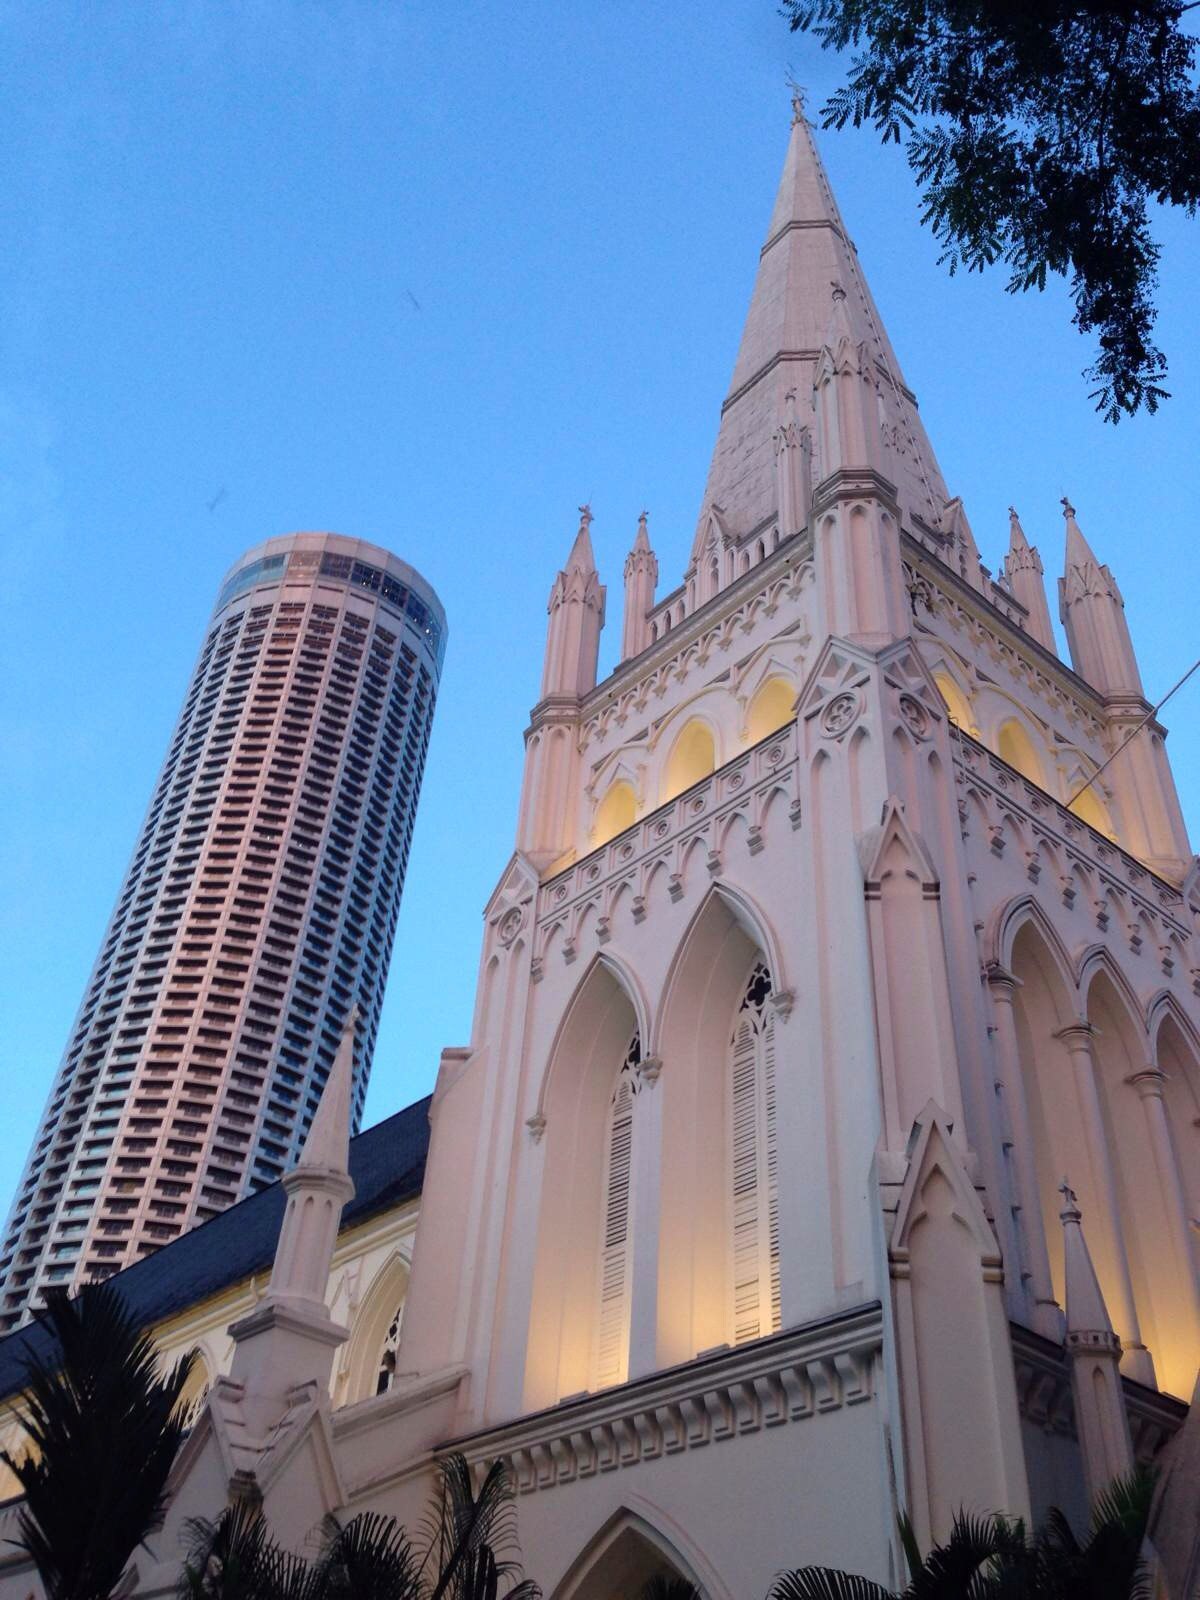 【携程攻略】新加坡圣安德烈教堂景点,大名鼎鼎的圣安德烈大教堂就